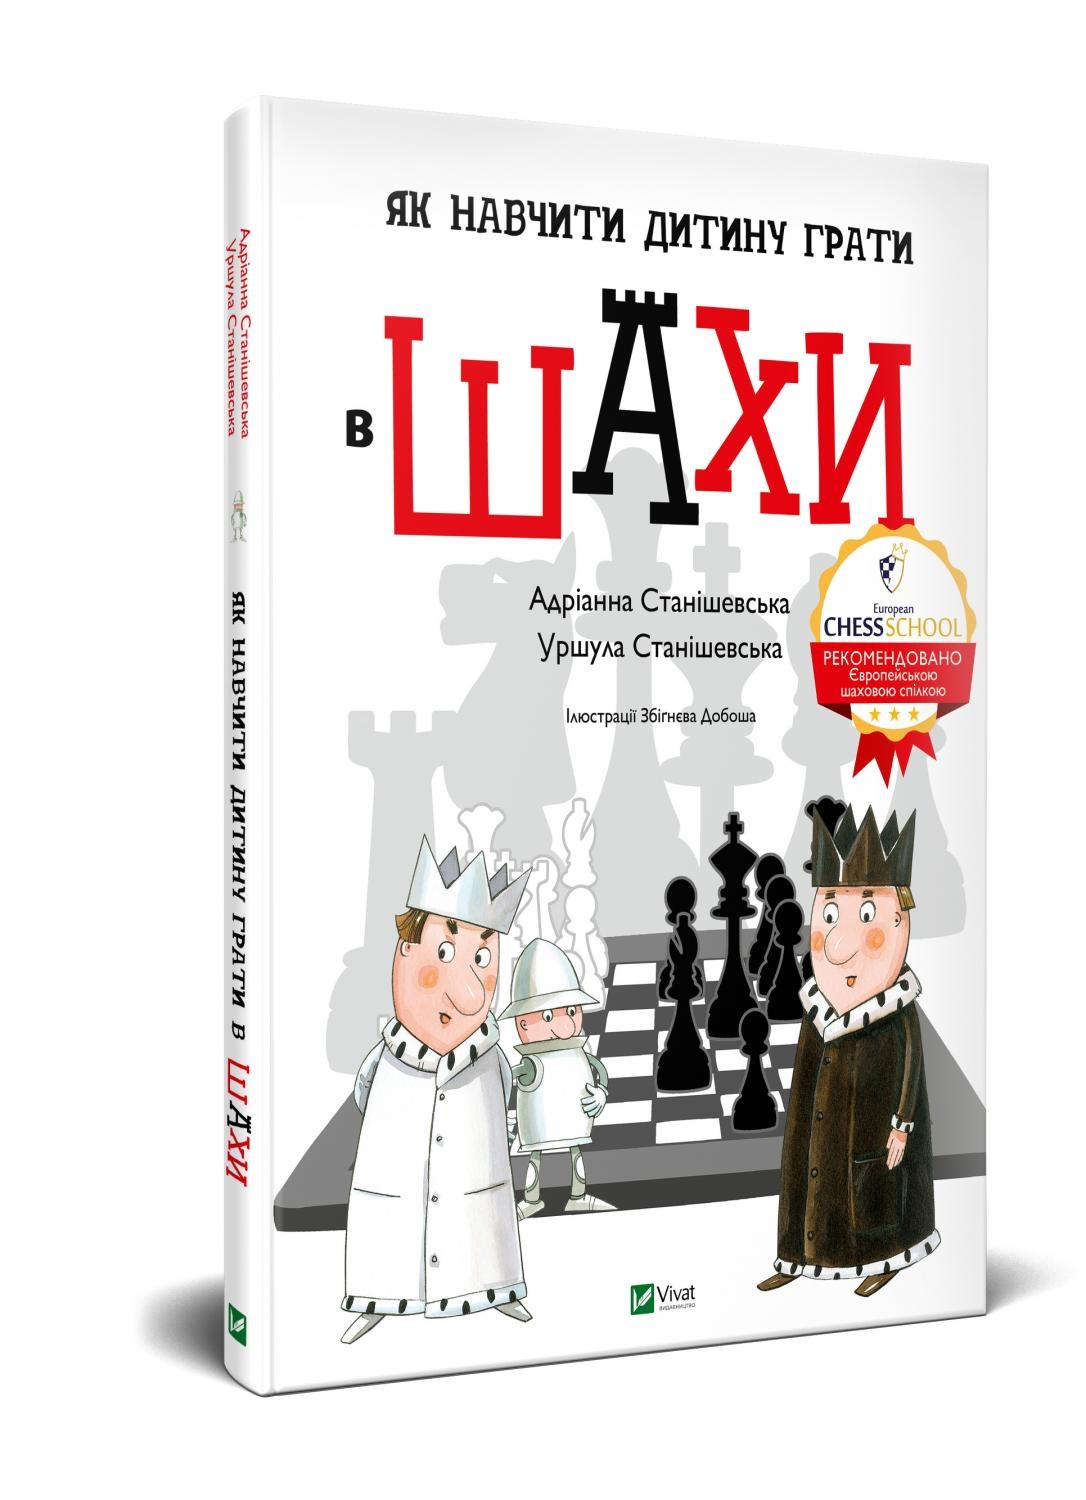 Як навчити дитину грати в шахи. Автор — Станішевська Уршула, Станішевська Адріанна. 